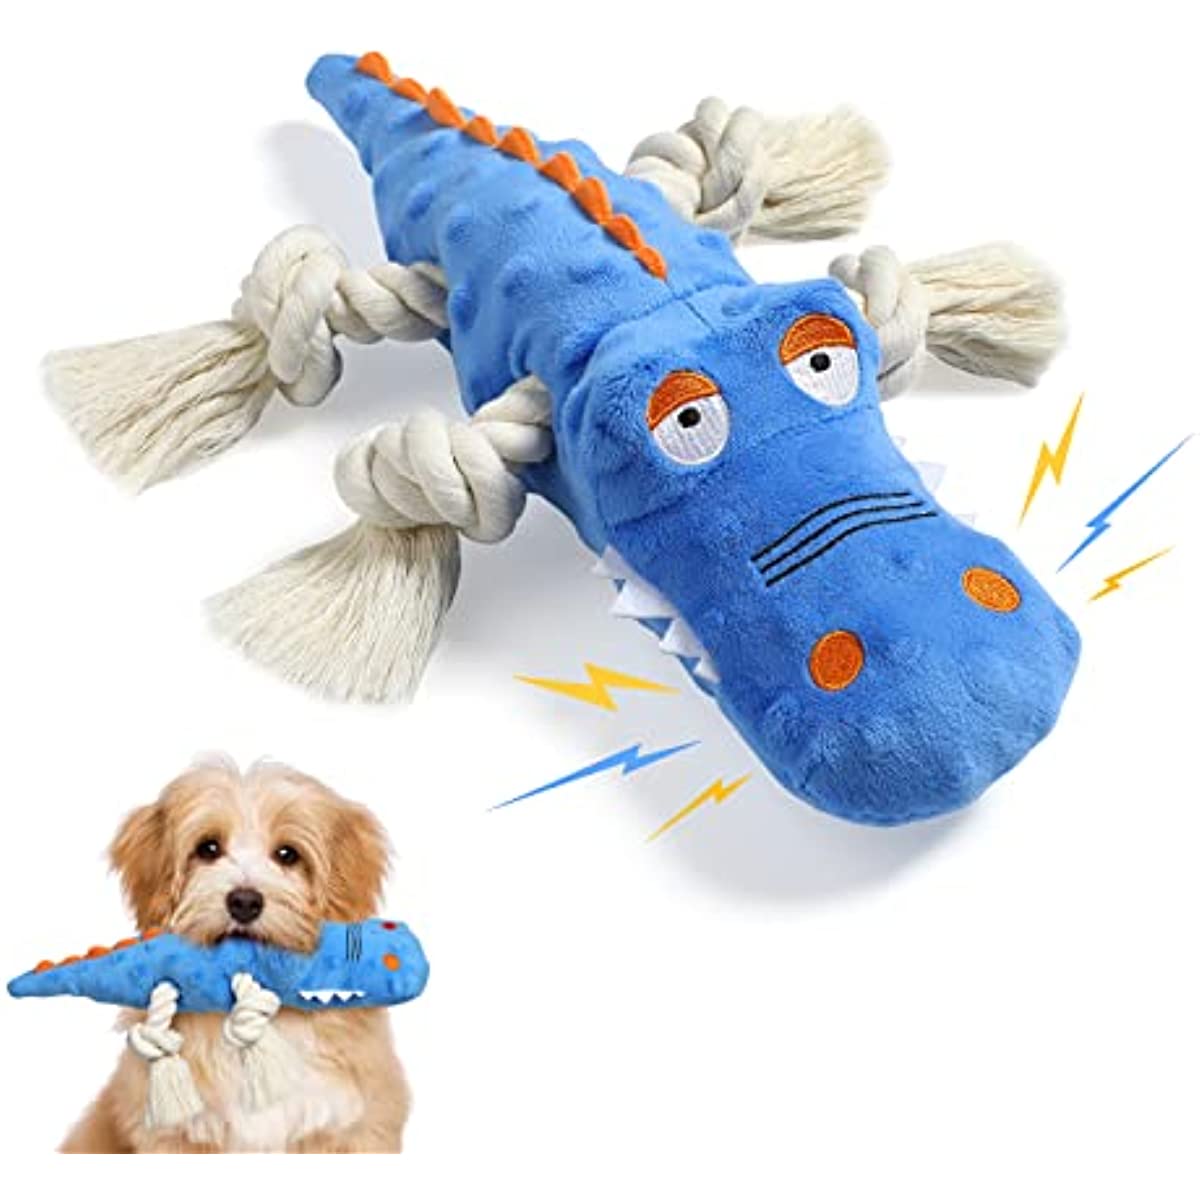 Crocodile Shaped Plush Dog Toy